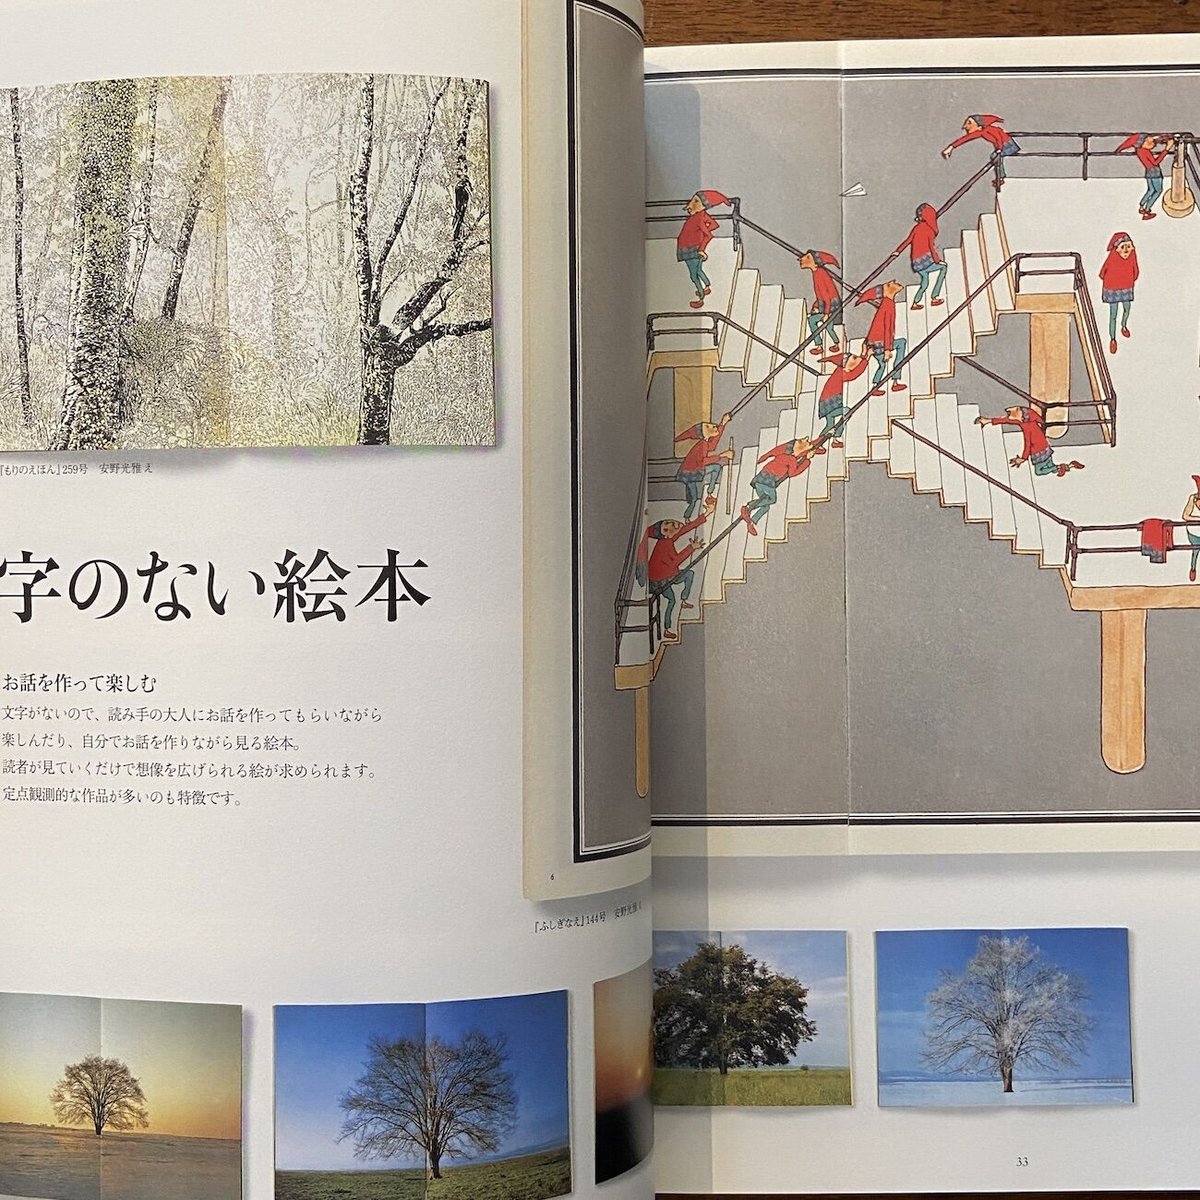 月刊絵本『こどものとも』50年の歩み」林明子　おじいさんがかぶをうえました　|...　加古里子　他